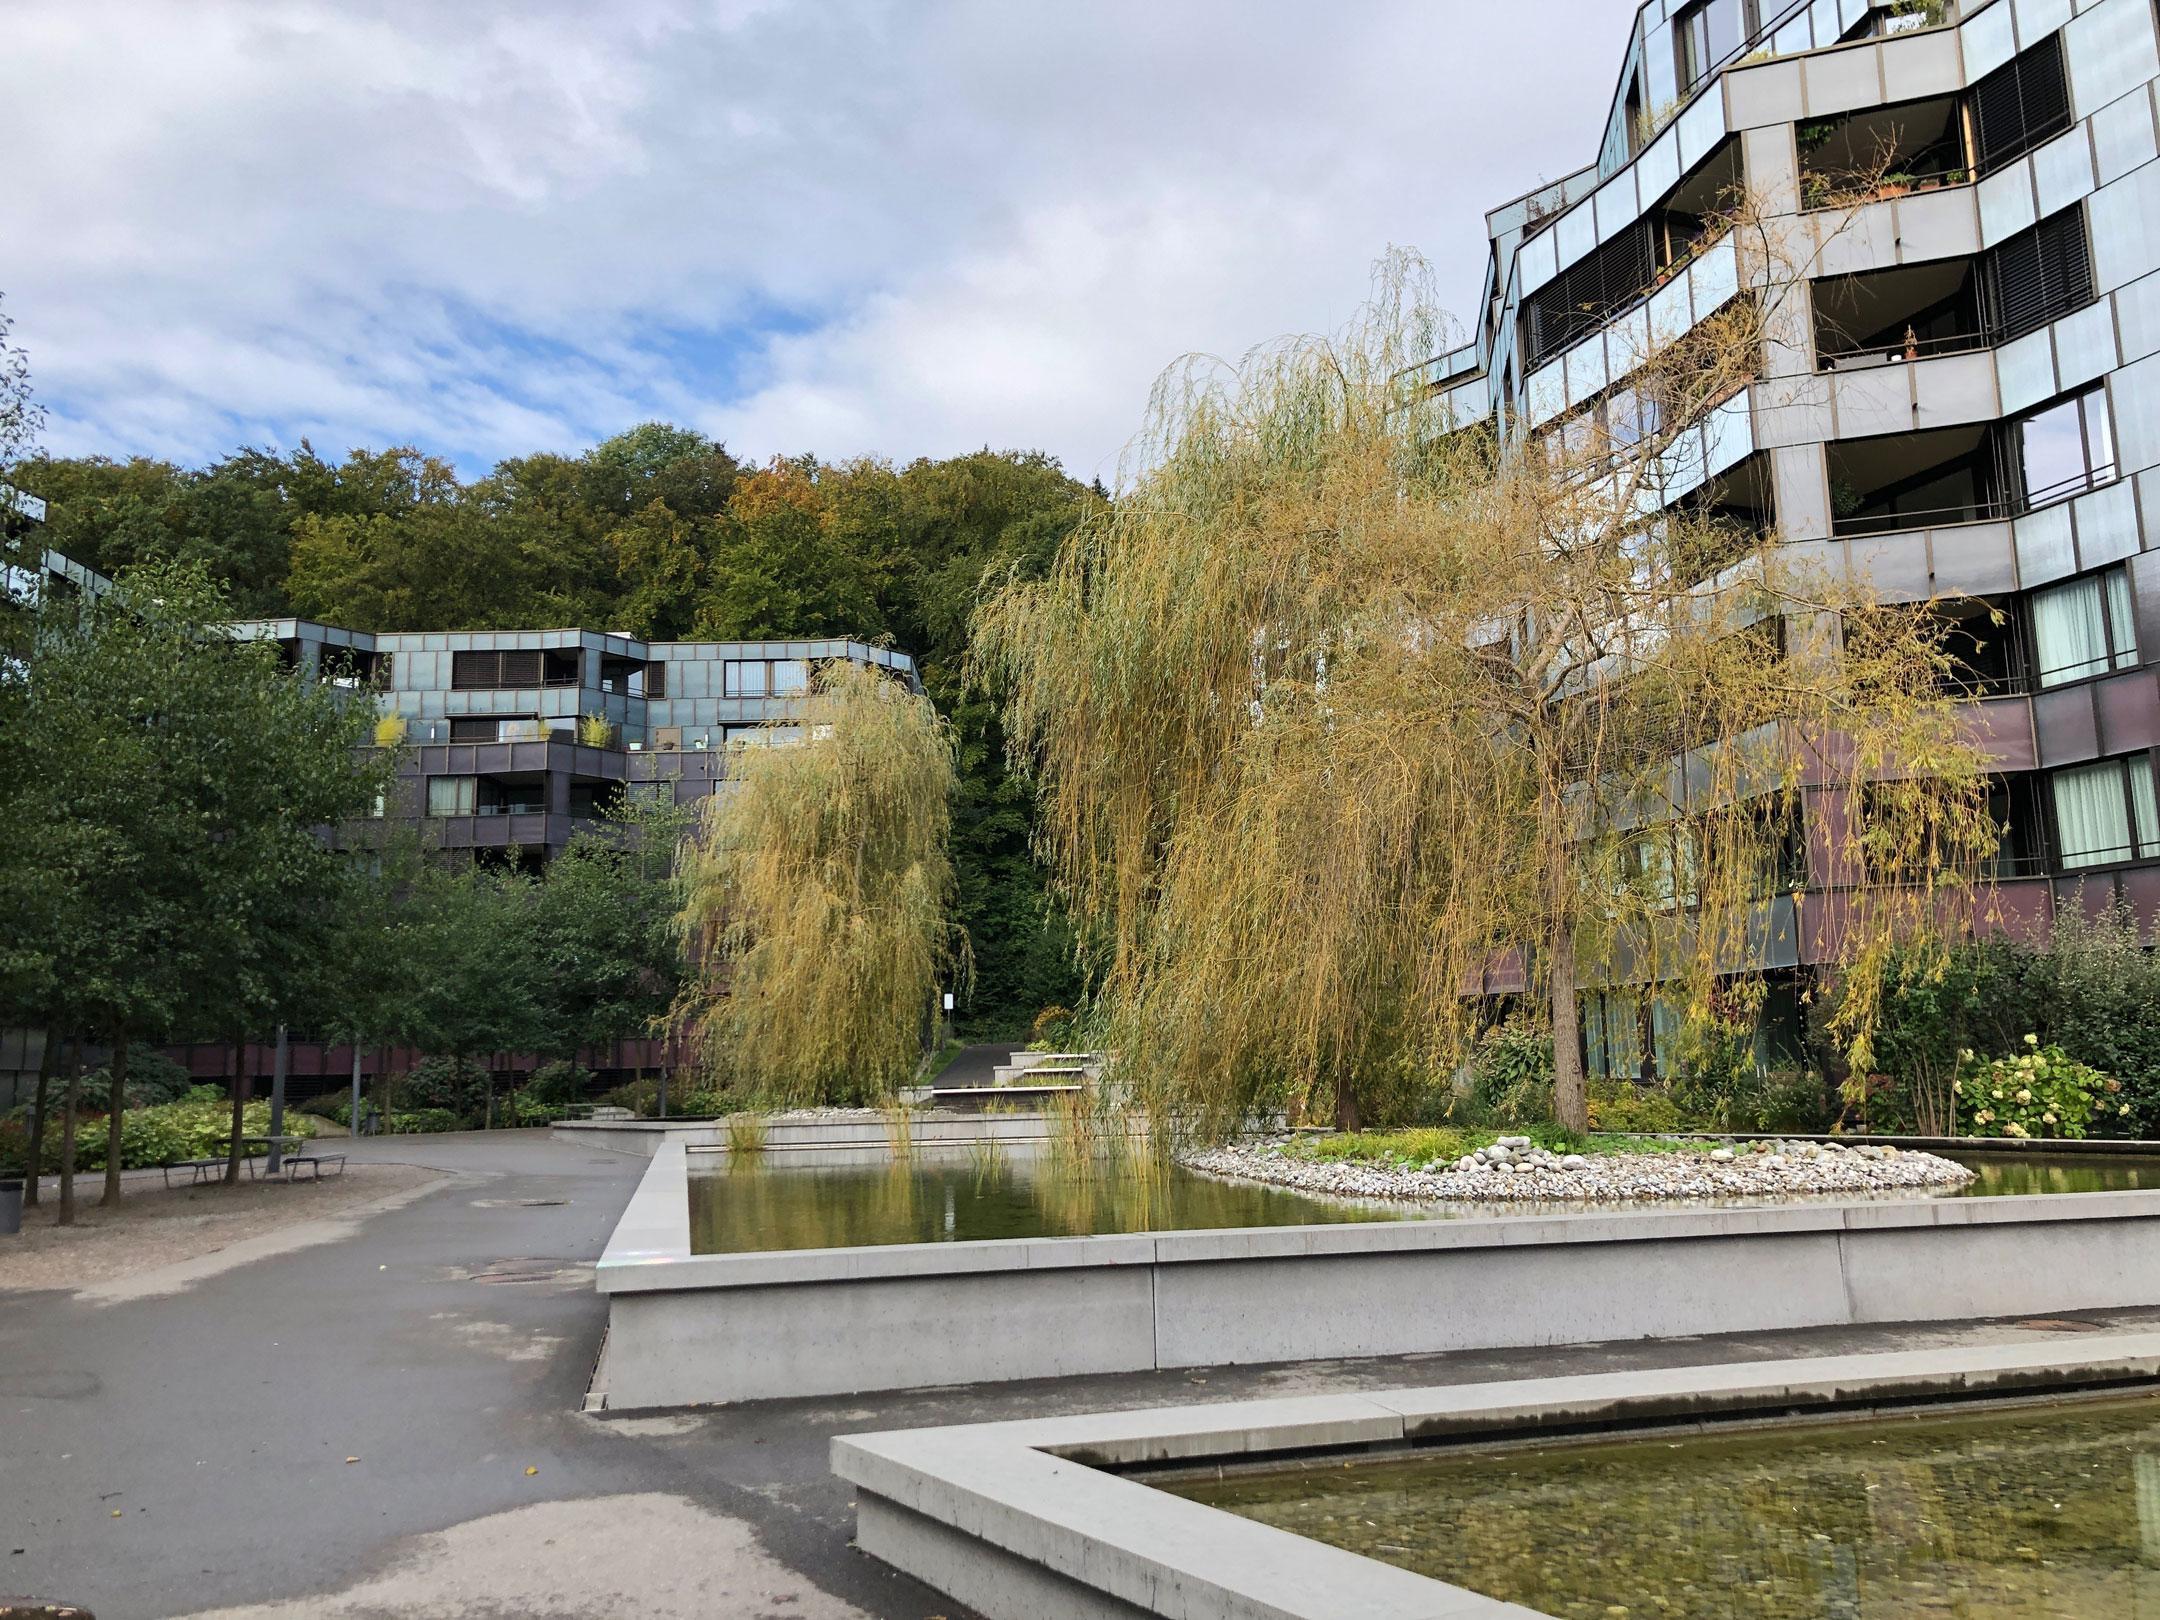 Das Foto zeigt den Aussenraum der Wohnüberbauung Guggach in Zürich. Zwischen den mehrstöckigen Mehrfamilienhäusern hat es grosse Wasserbecken die mit grossen Bäumen und Schilf bepflanzt sind.